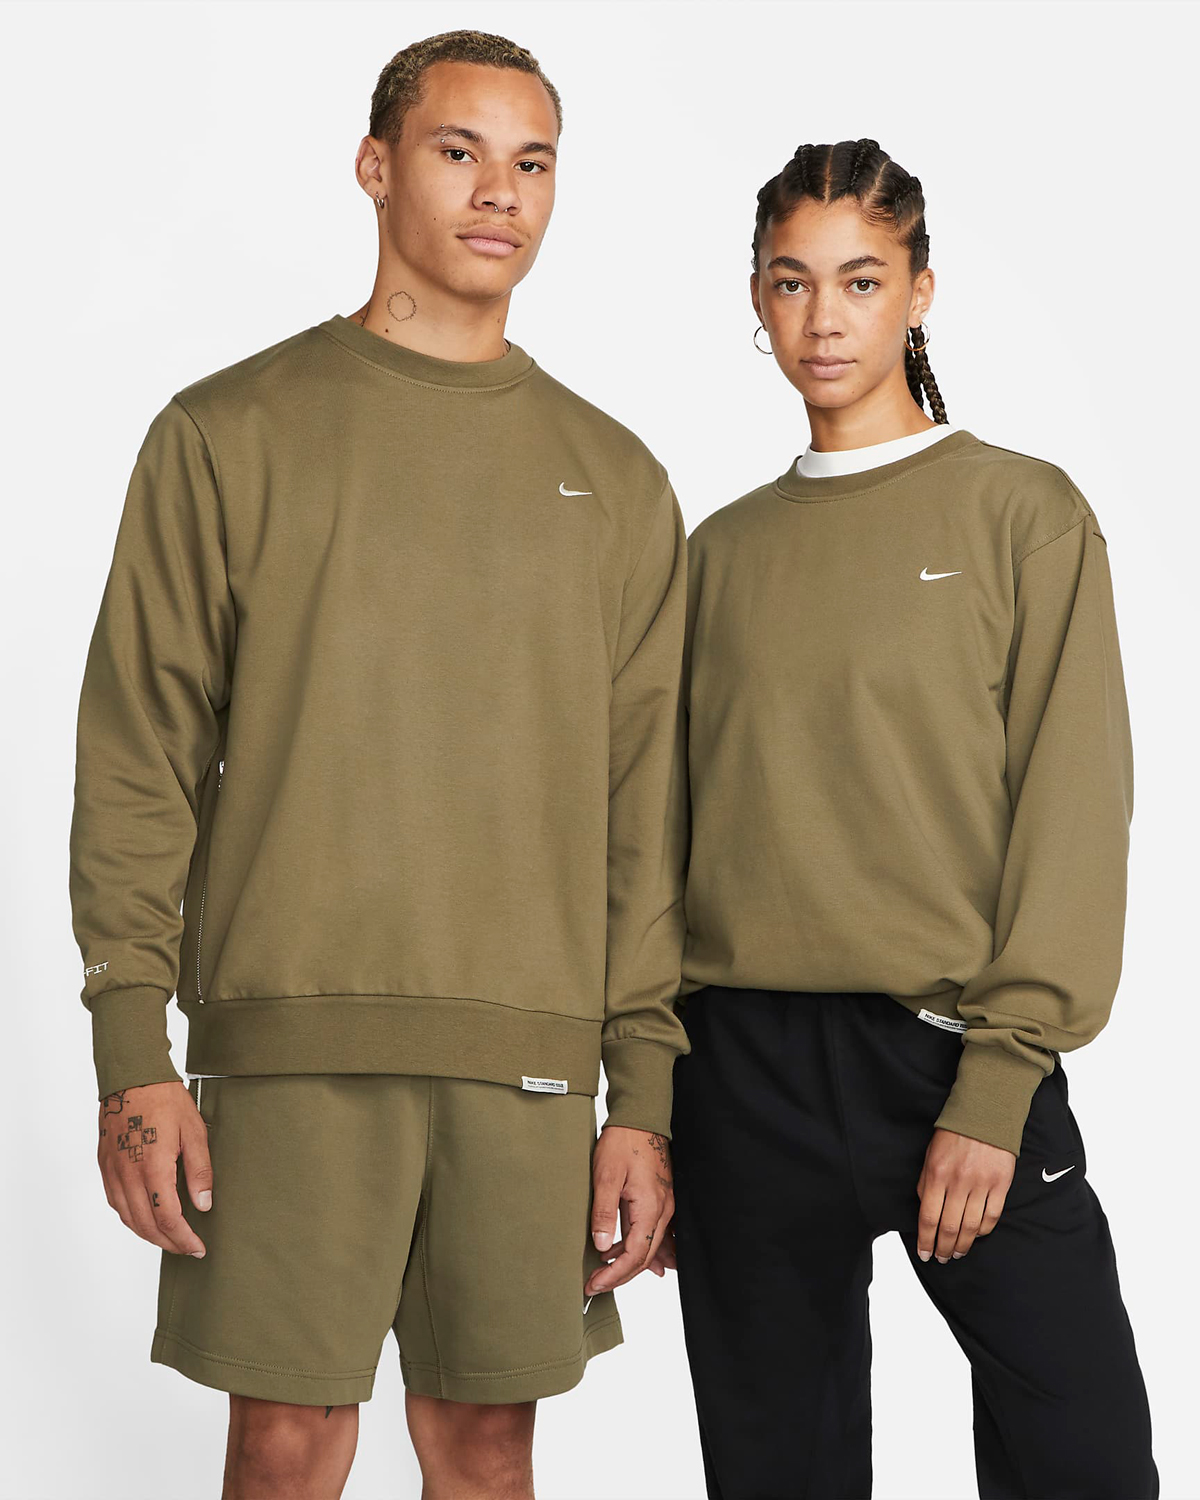 Nike-Medium-Olive-Crew-Sweatshirt